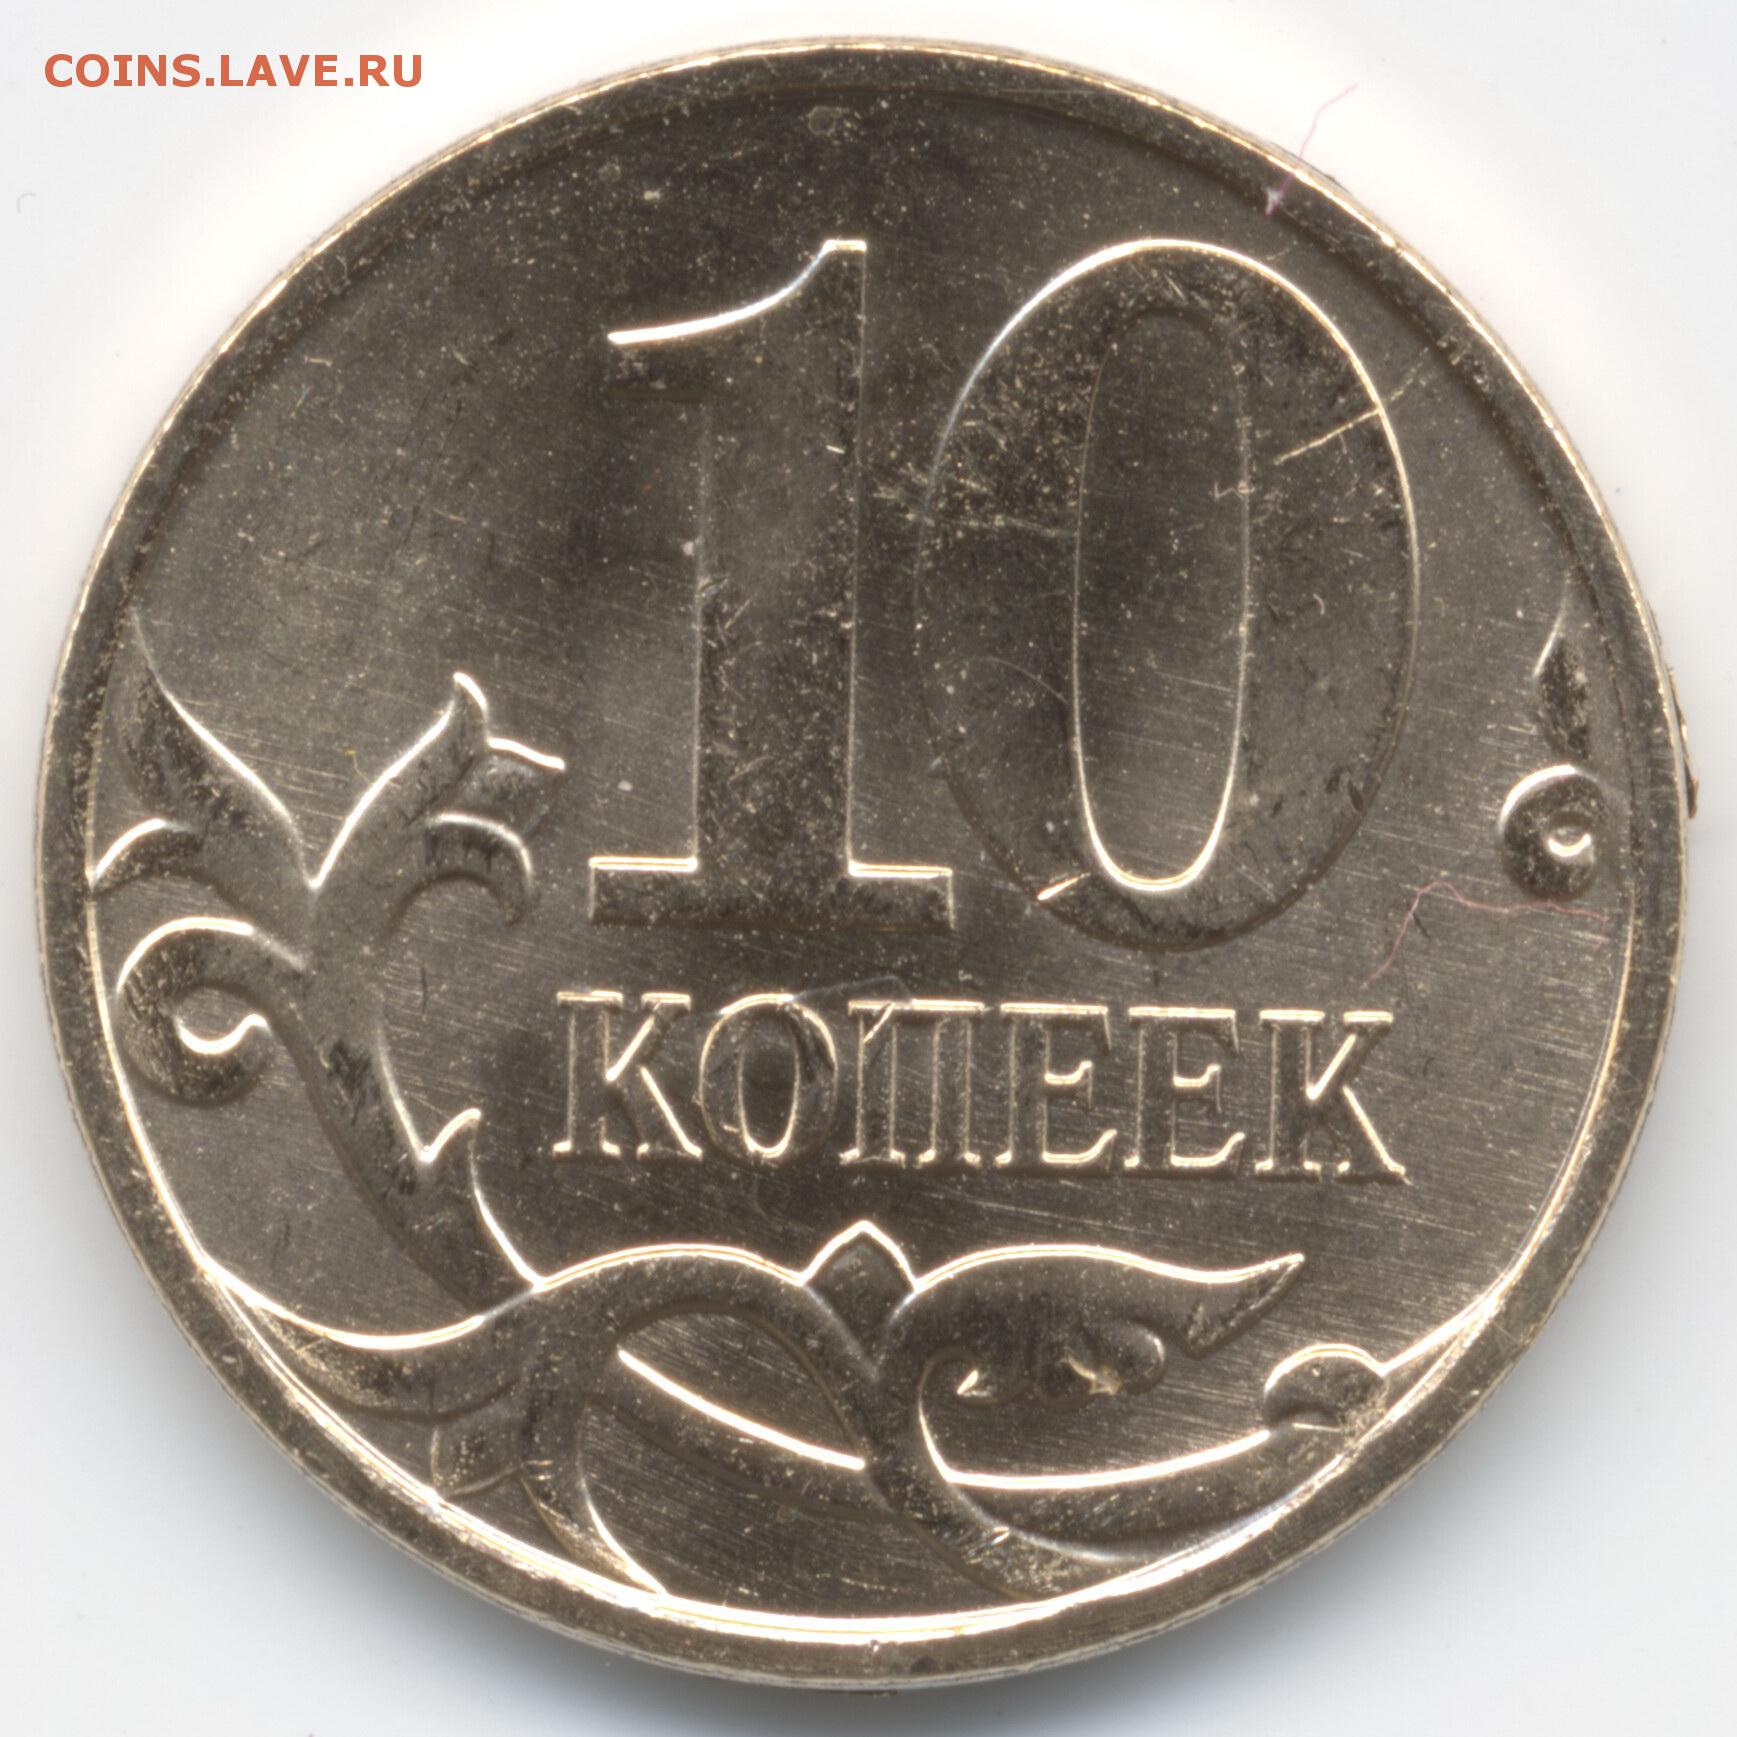 Купить рубли монеты россия. Монета 10 копеек. Копеечная монета. Российские монеты. Русские монеты.